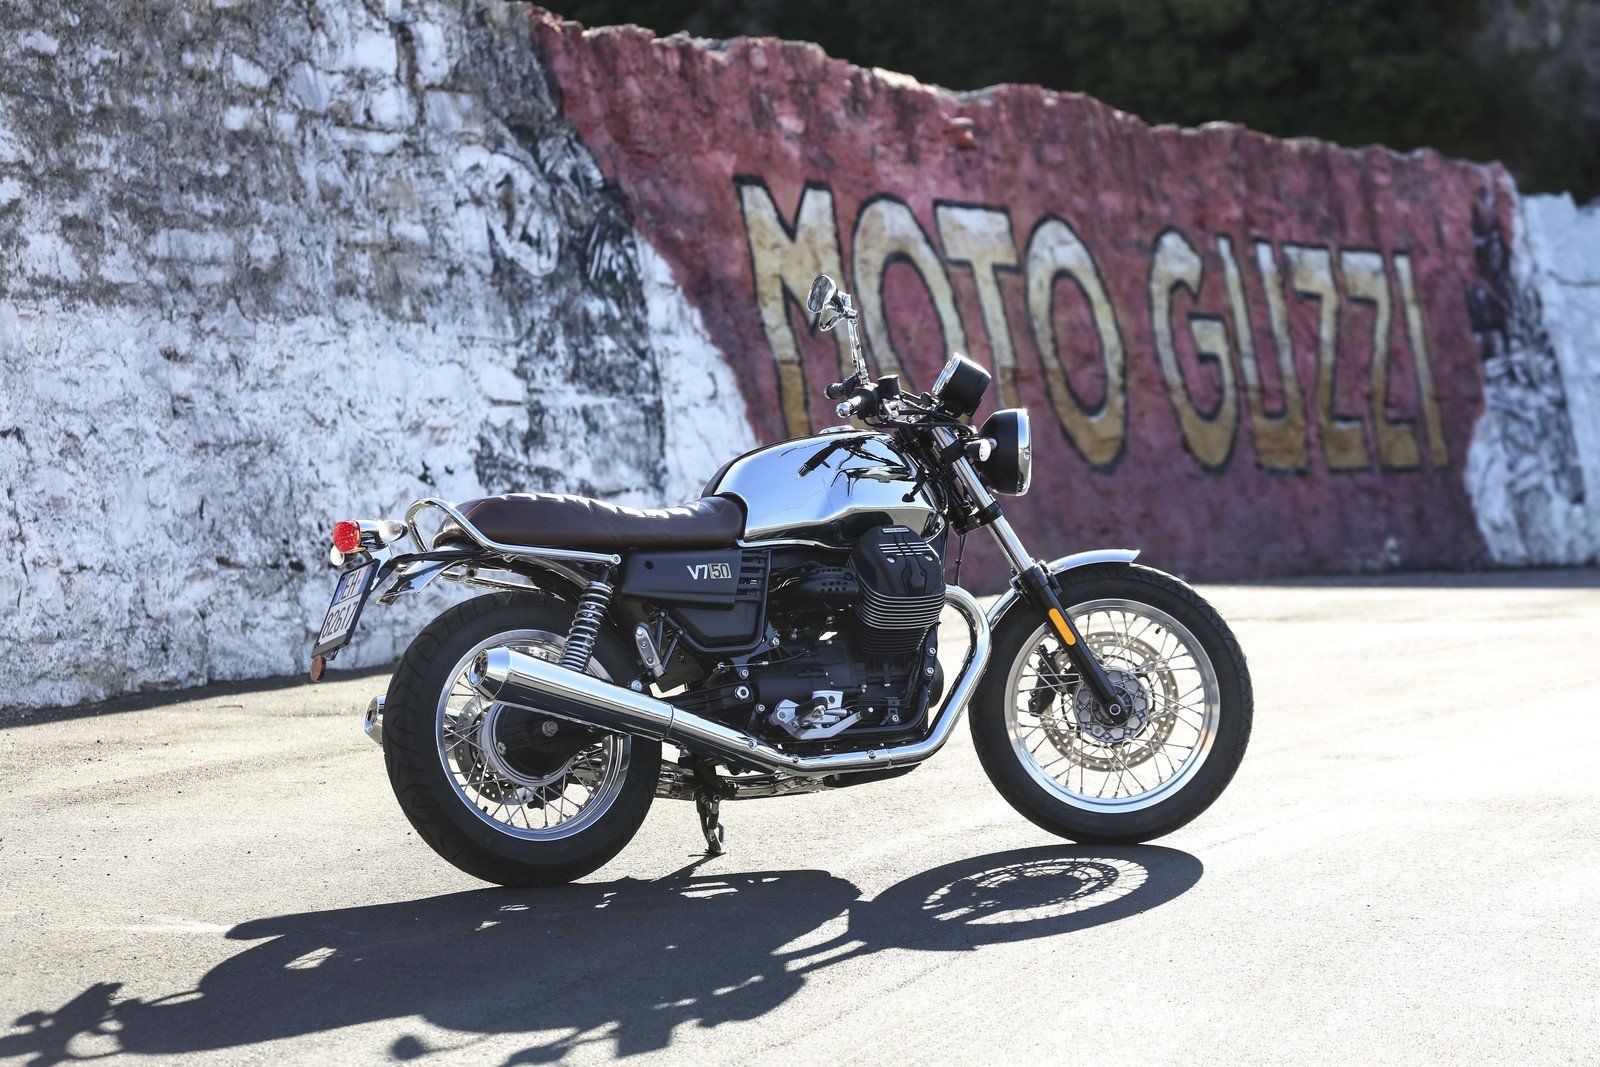 Moto Guzzi V7 III Picture, Photo, Wallpaper And Videos